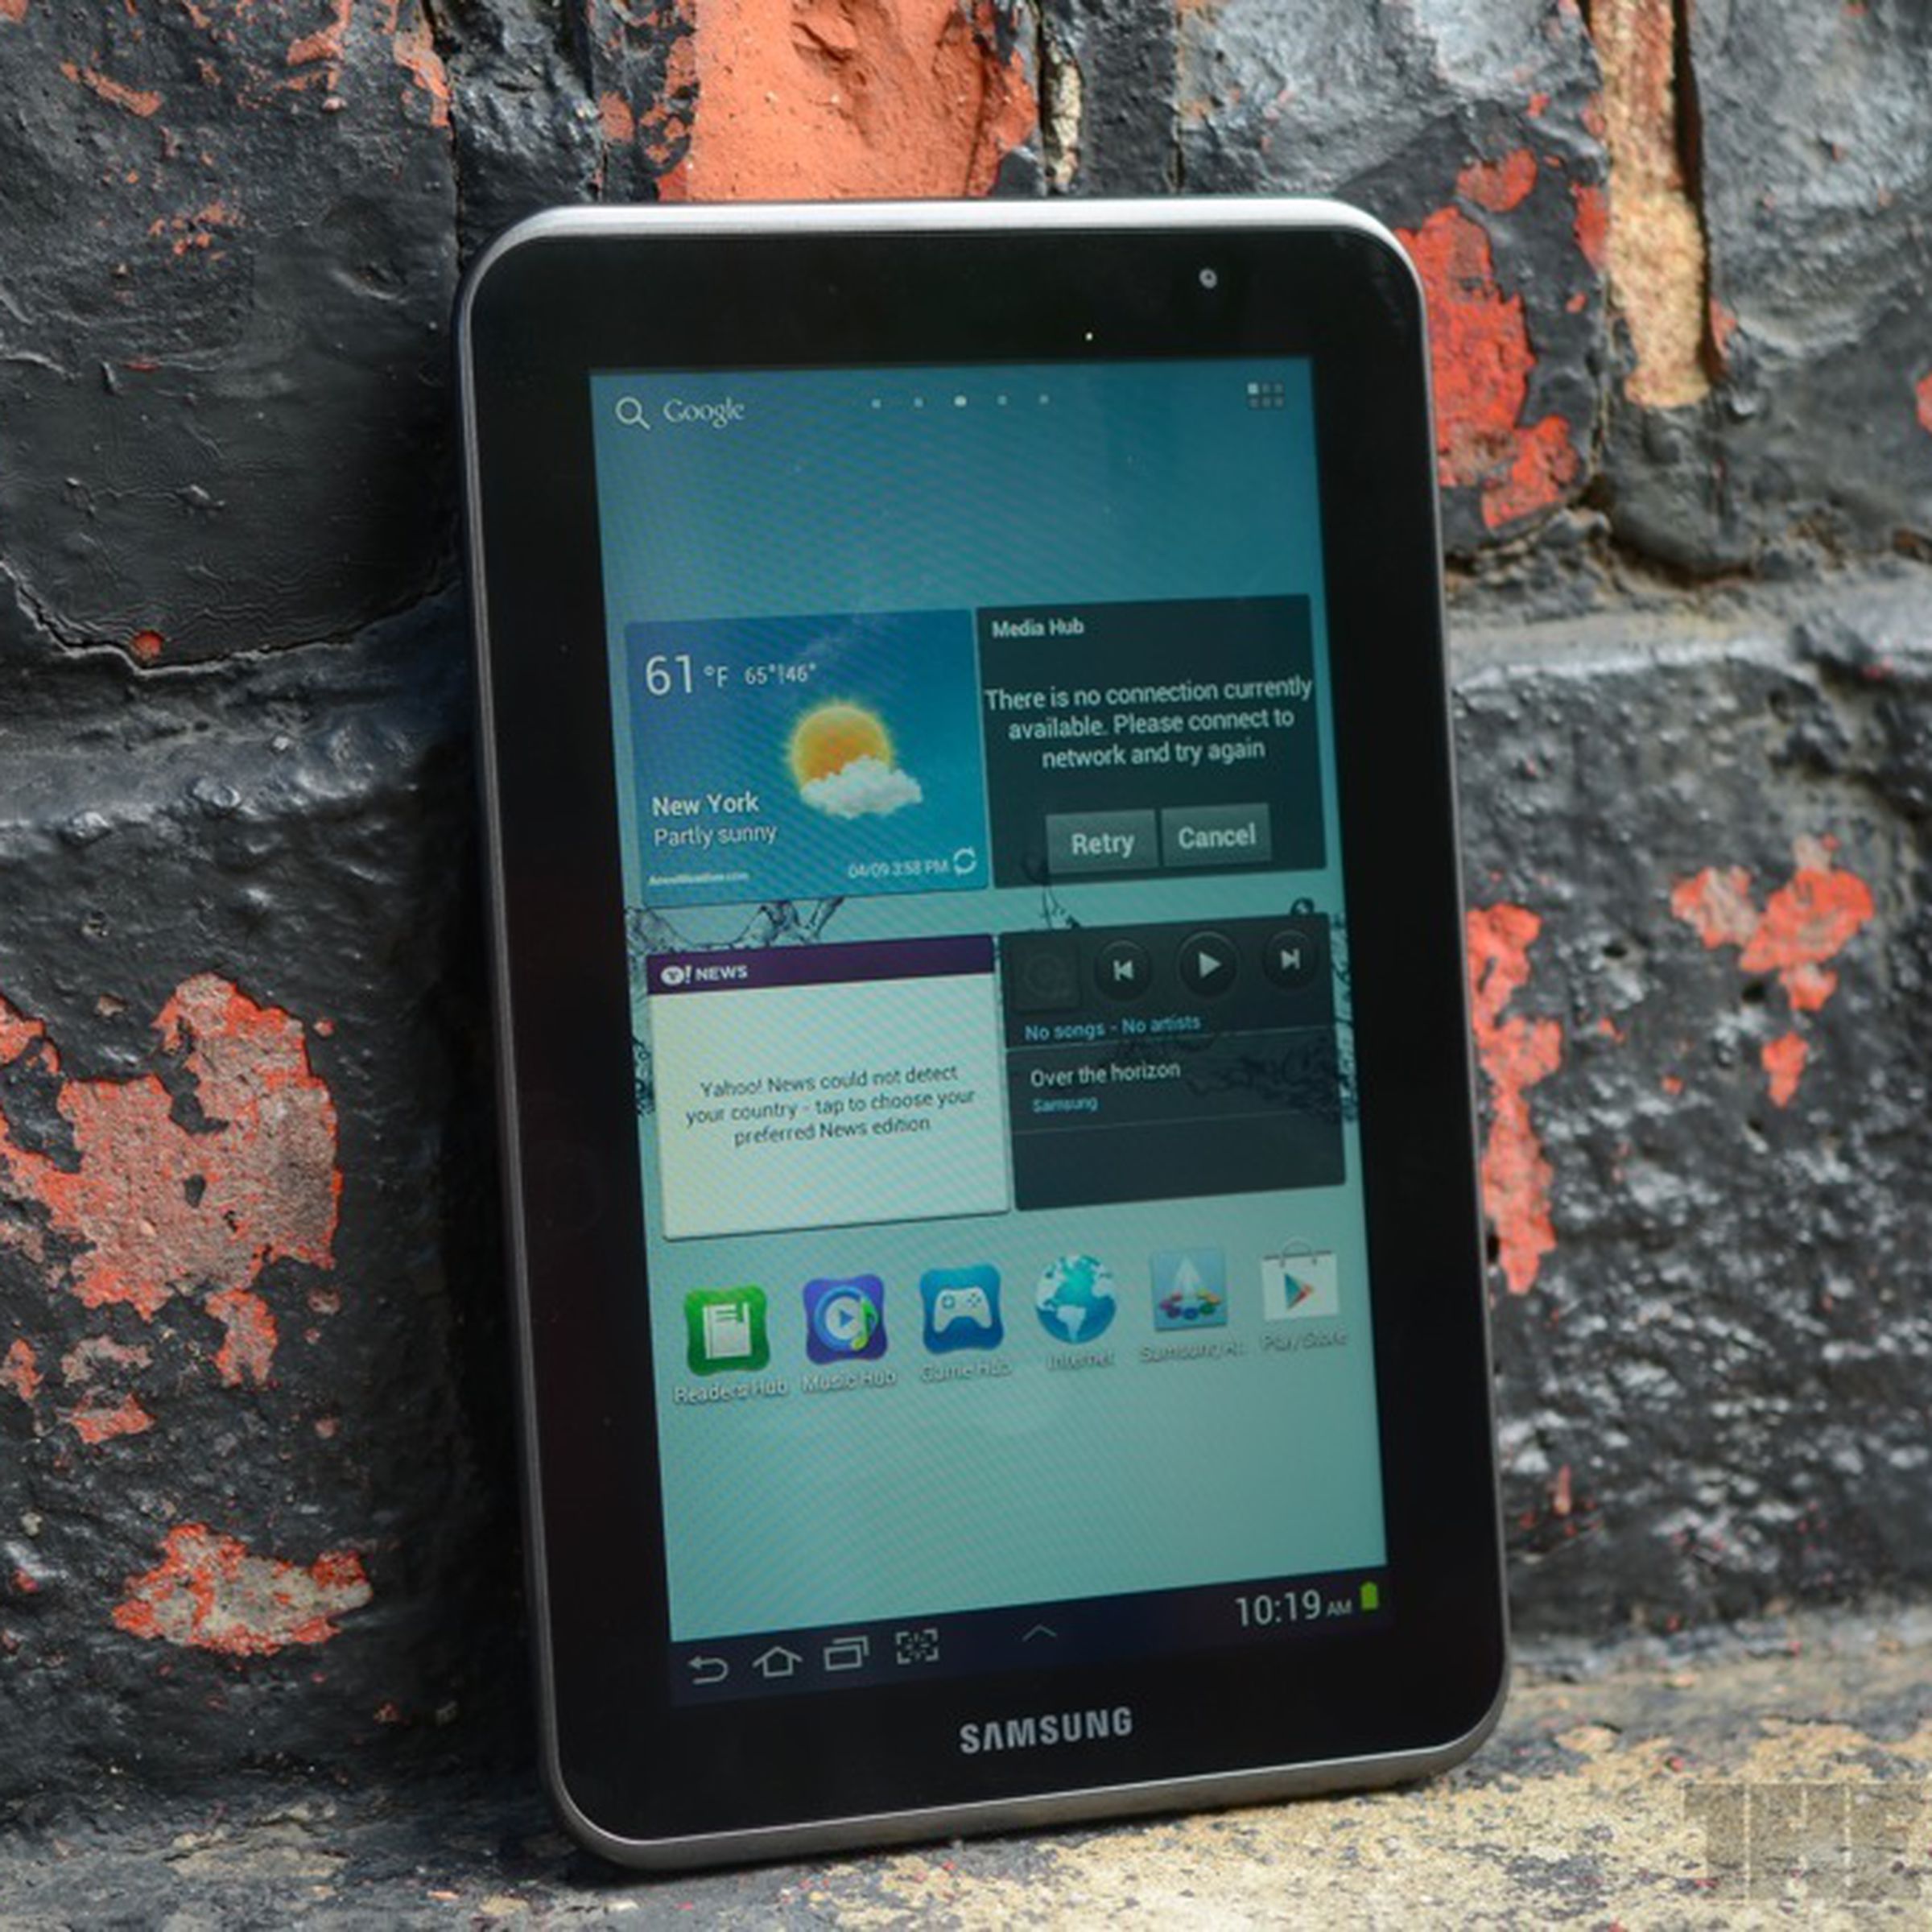 Samsung Galaxy Tab 2 7.0 hero (1024px)